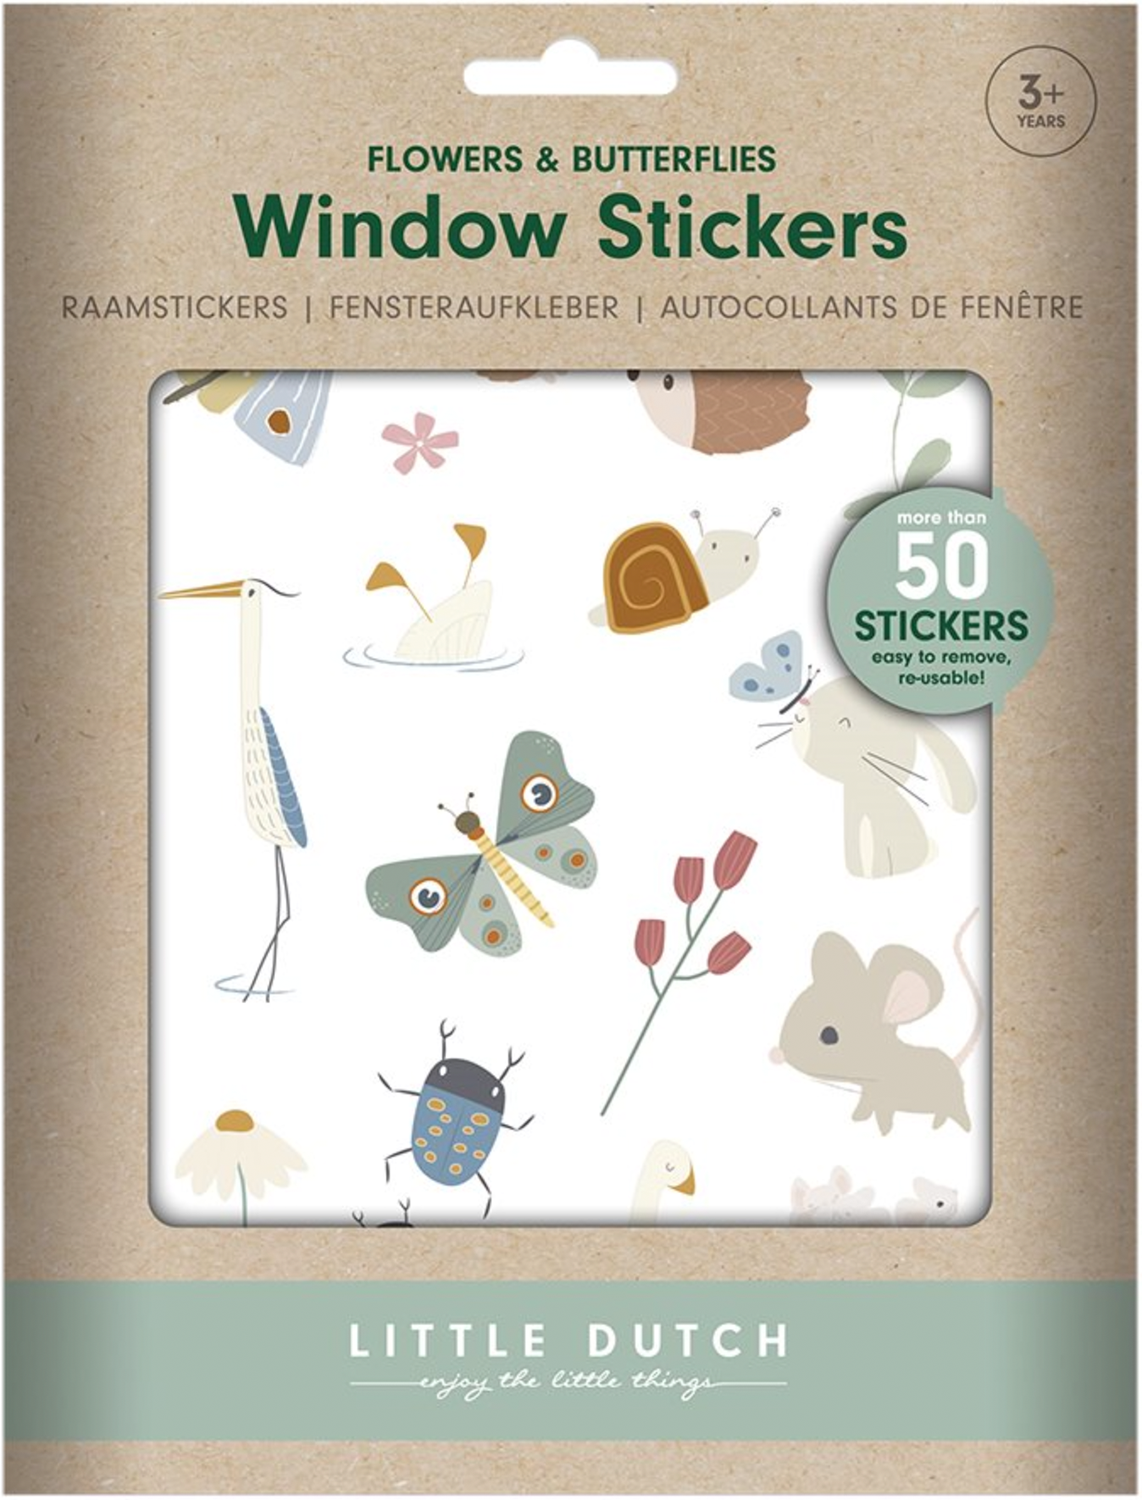 Fensteraufkleber / Sticker Flowers & Butterflies / Blumen & Schmetterlinge